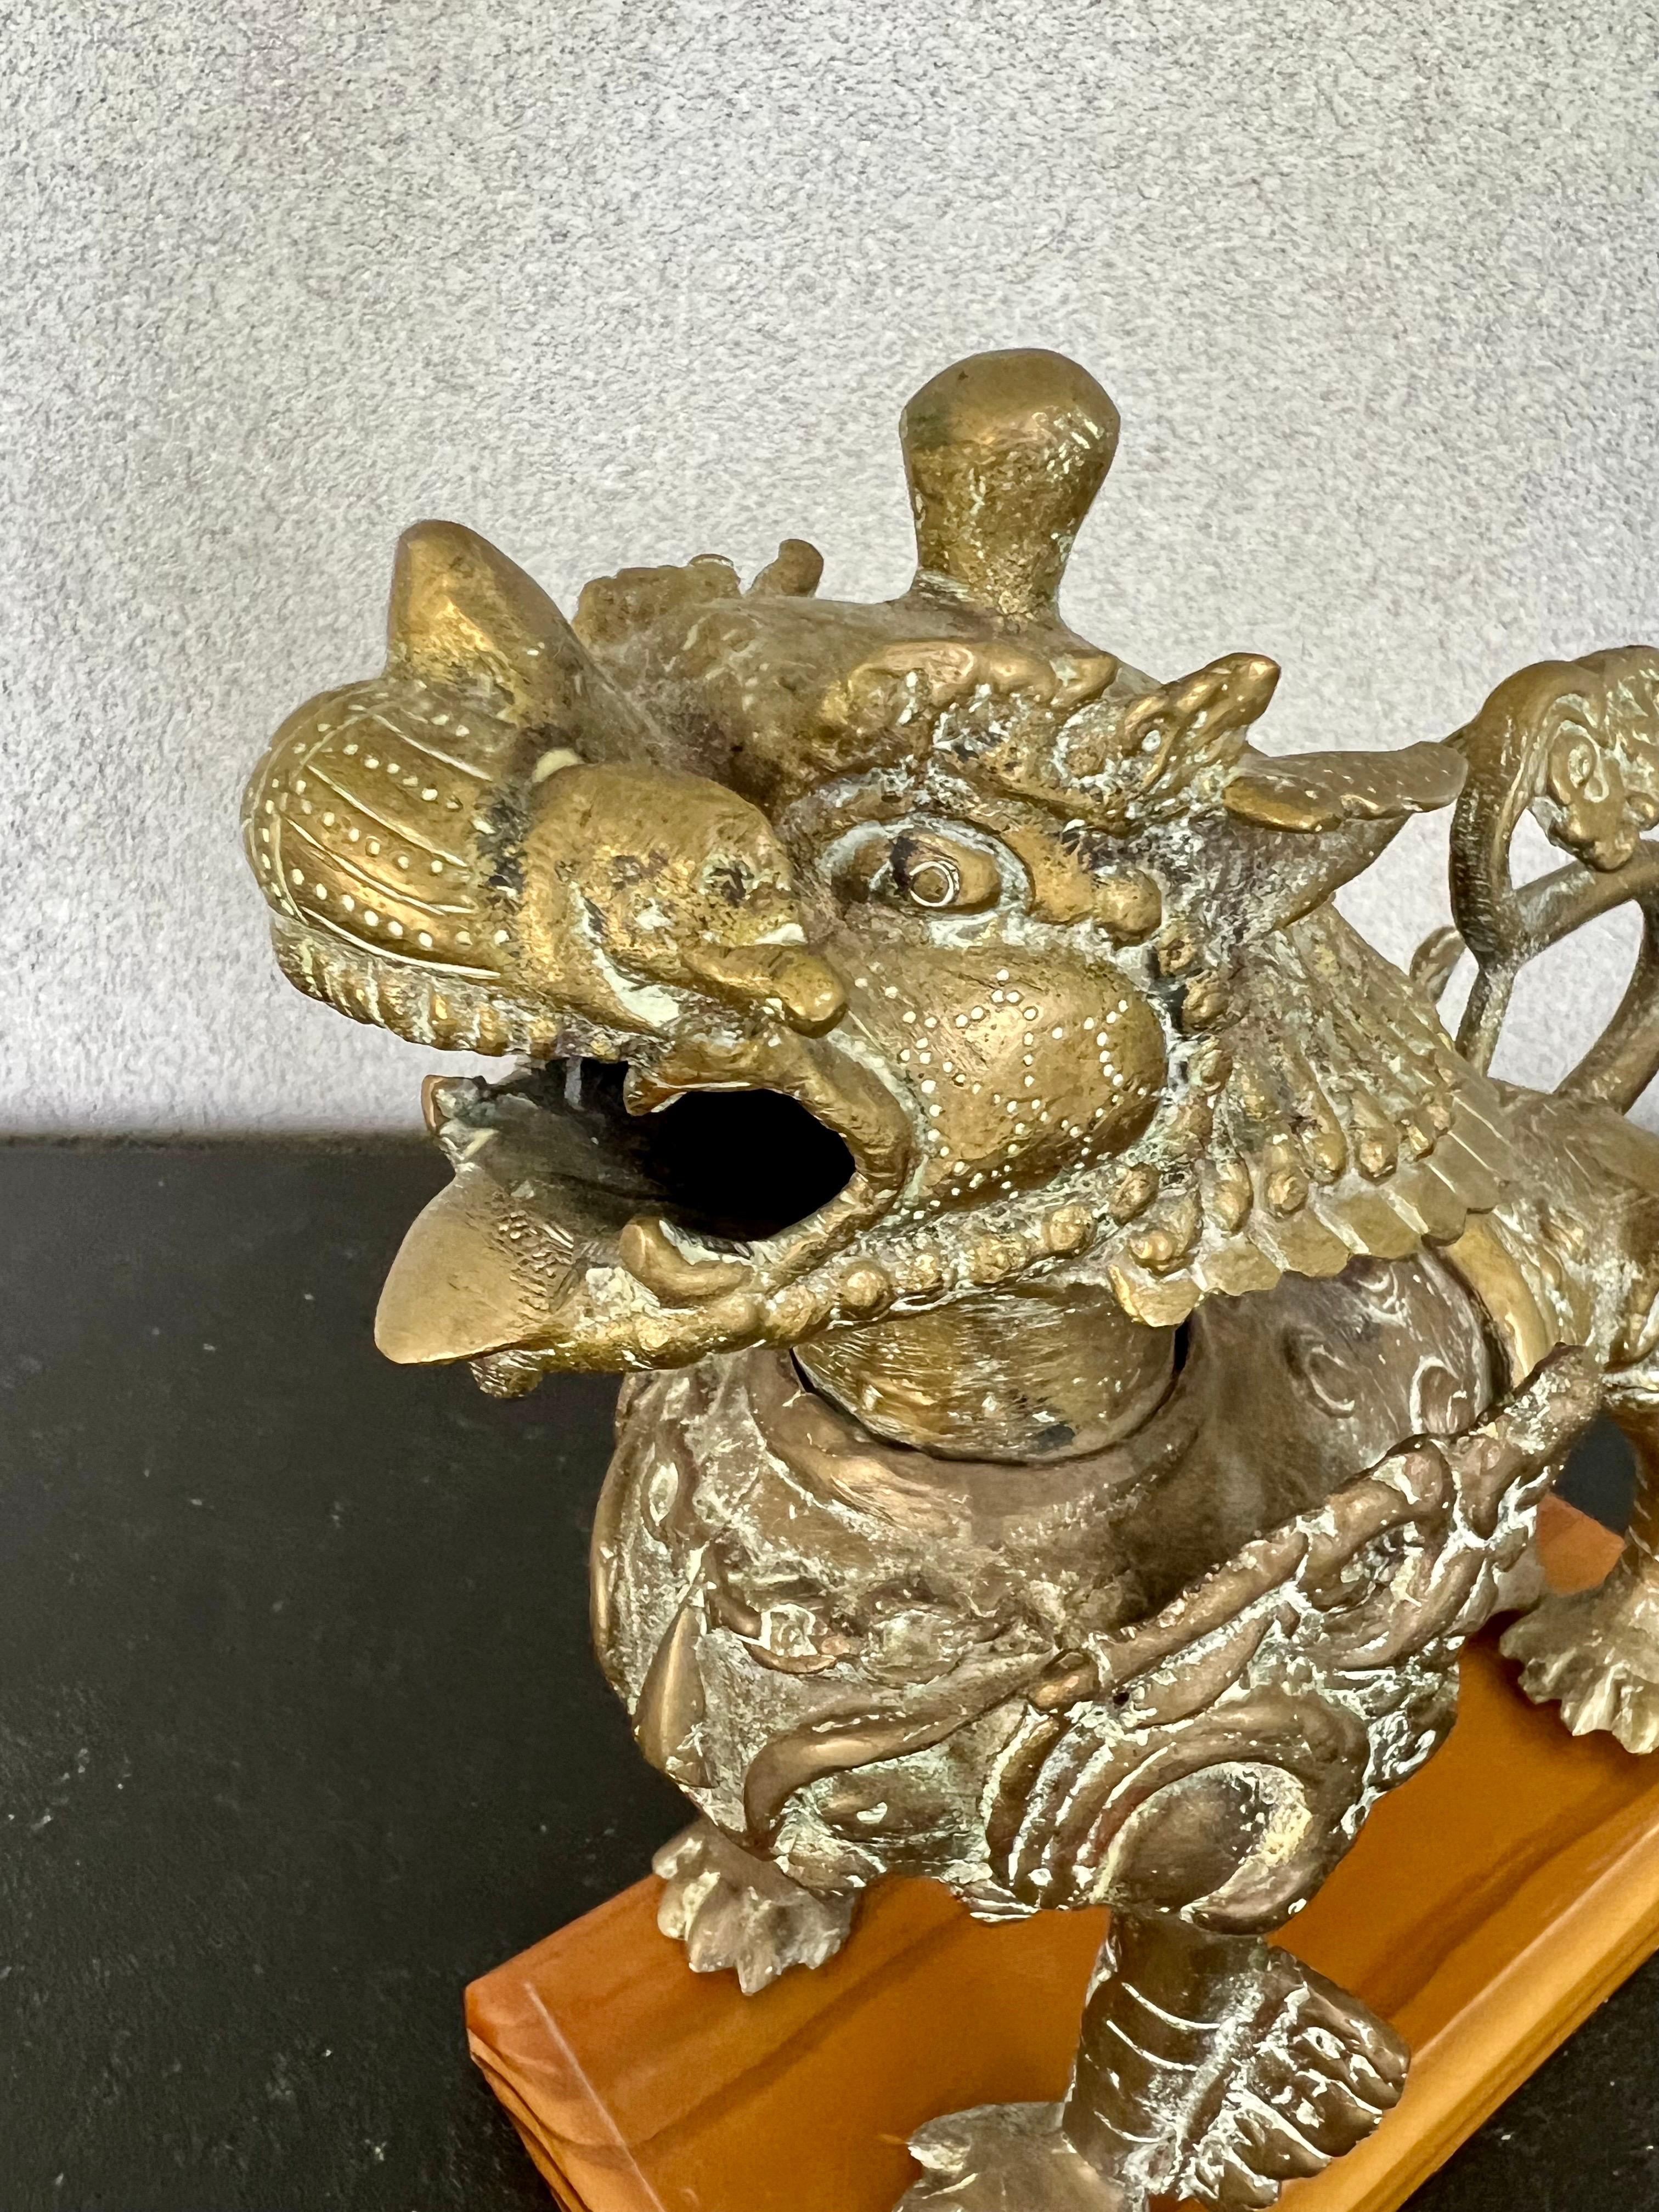 Etonnant chien/Lion tibétain Foo en bronze massif vintage a une base en bois qu'il n'est pas fixé à la sculpture. 
Il s'agit d'une pièce lourde et extrêmement détaillée qui serait spectaculaire dans n'importe quel décor. 
Style
pèse 4,6 livres sans